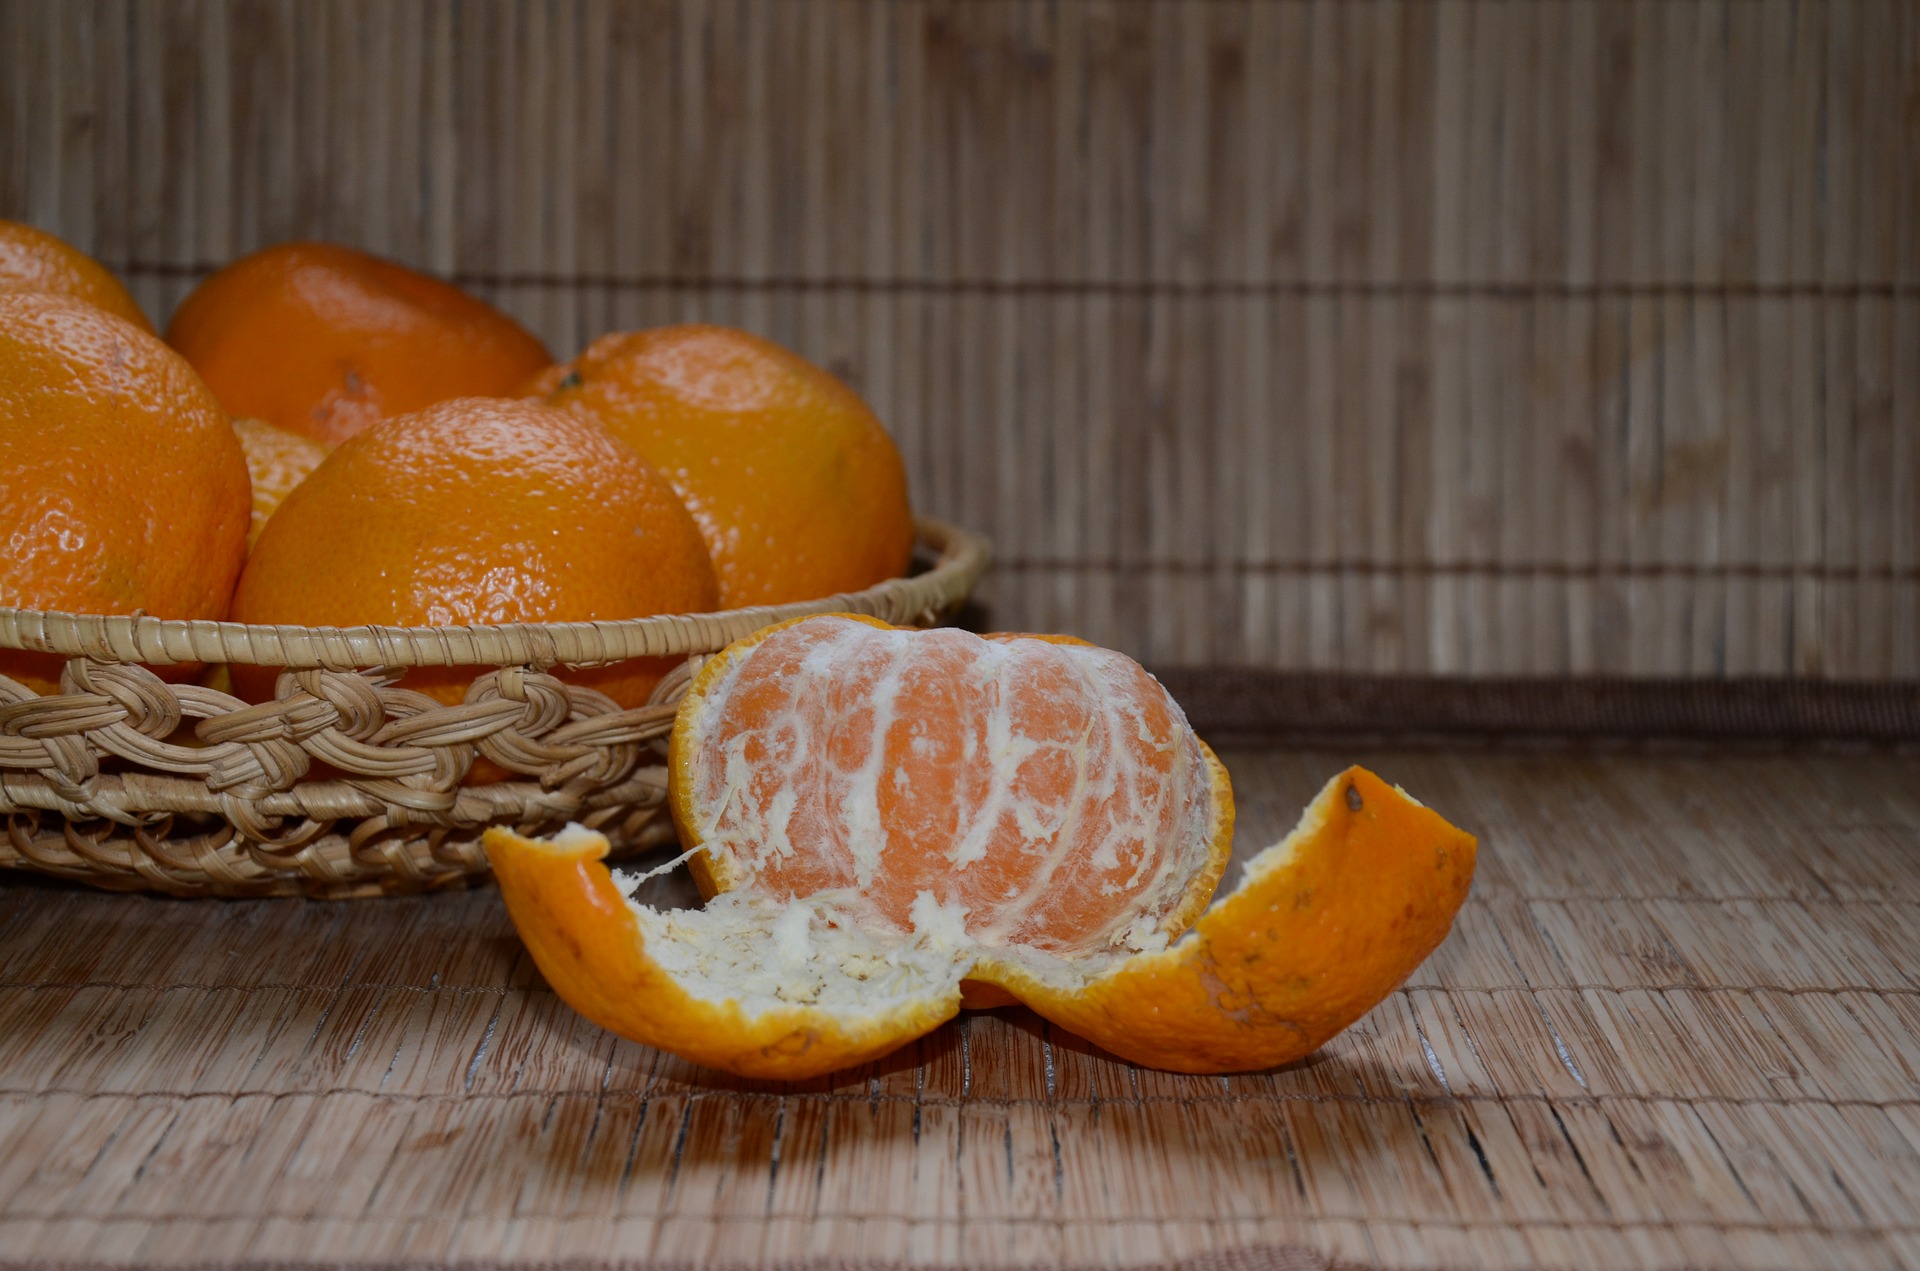 Мандарины п. Мандарины Jaffa. Танжерин фрукт. Апельсин, цитрус, кожура, оранжевый. Мандарины Яффо.